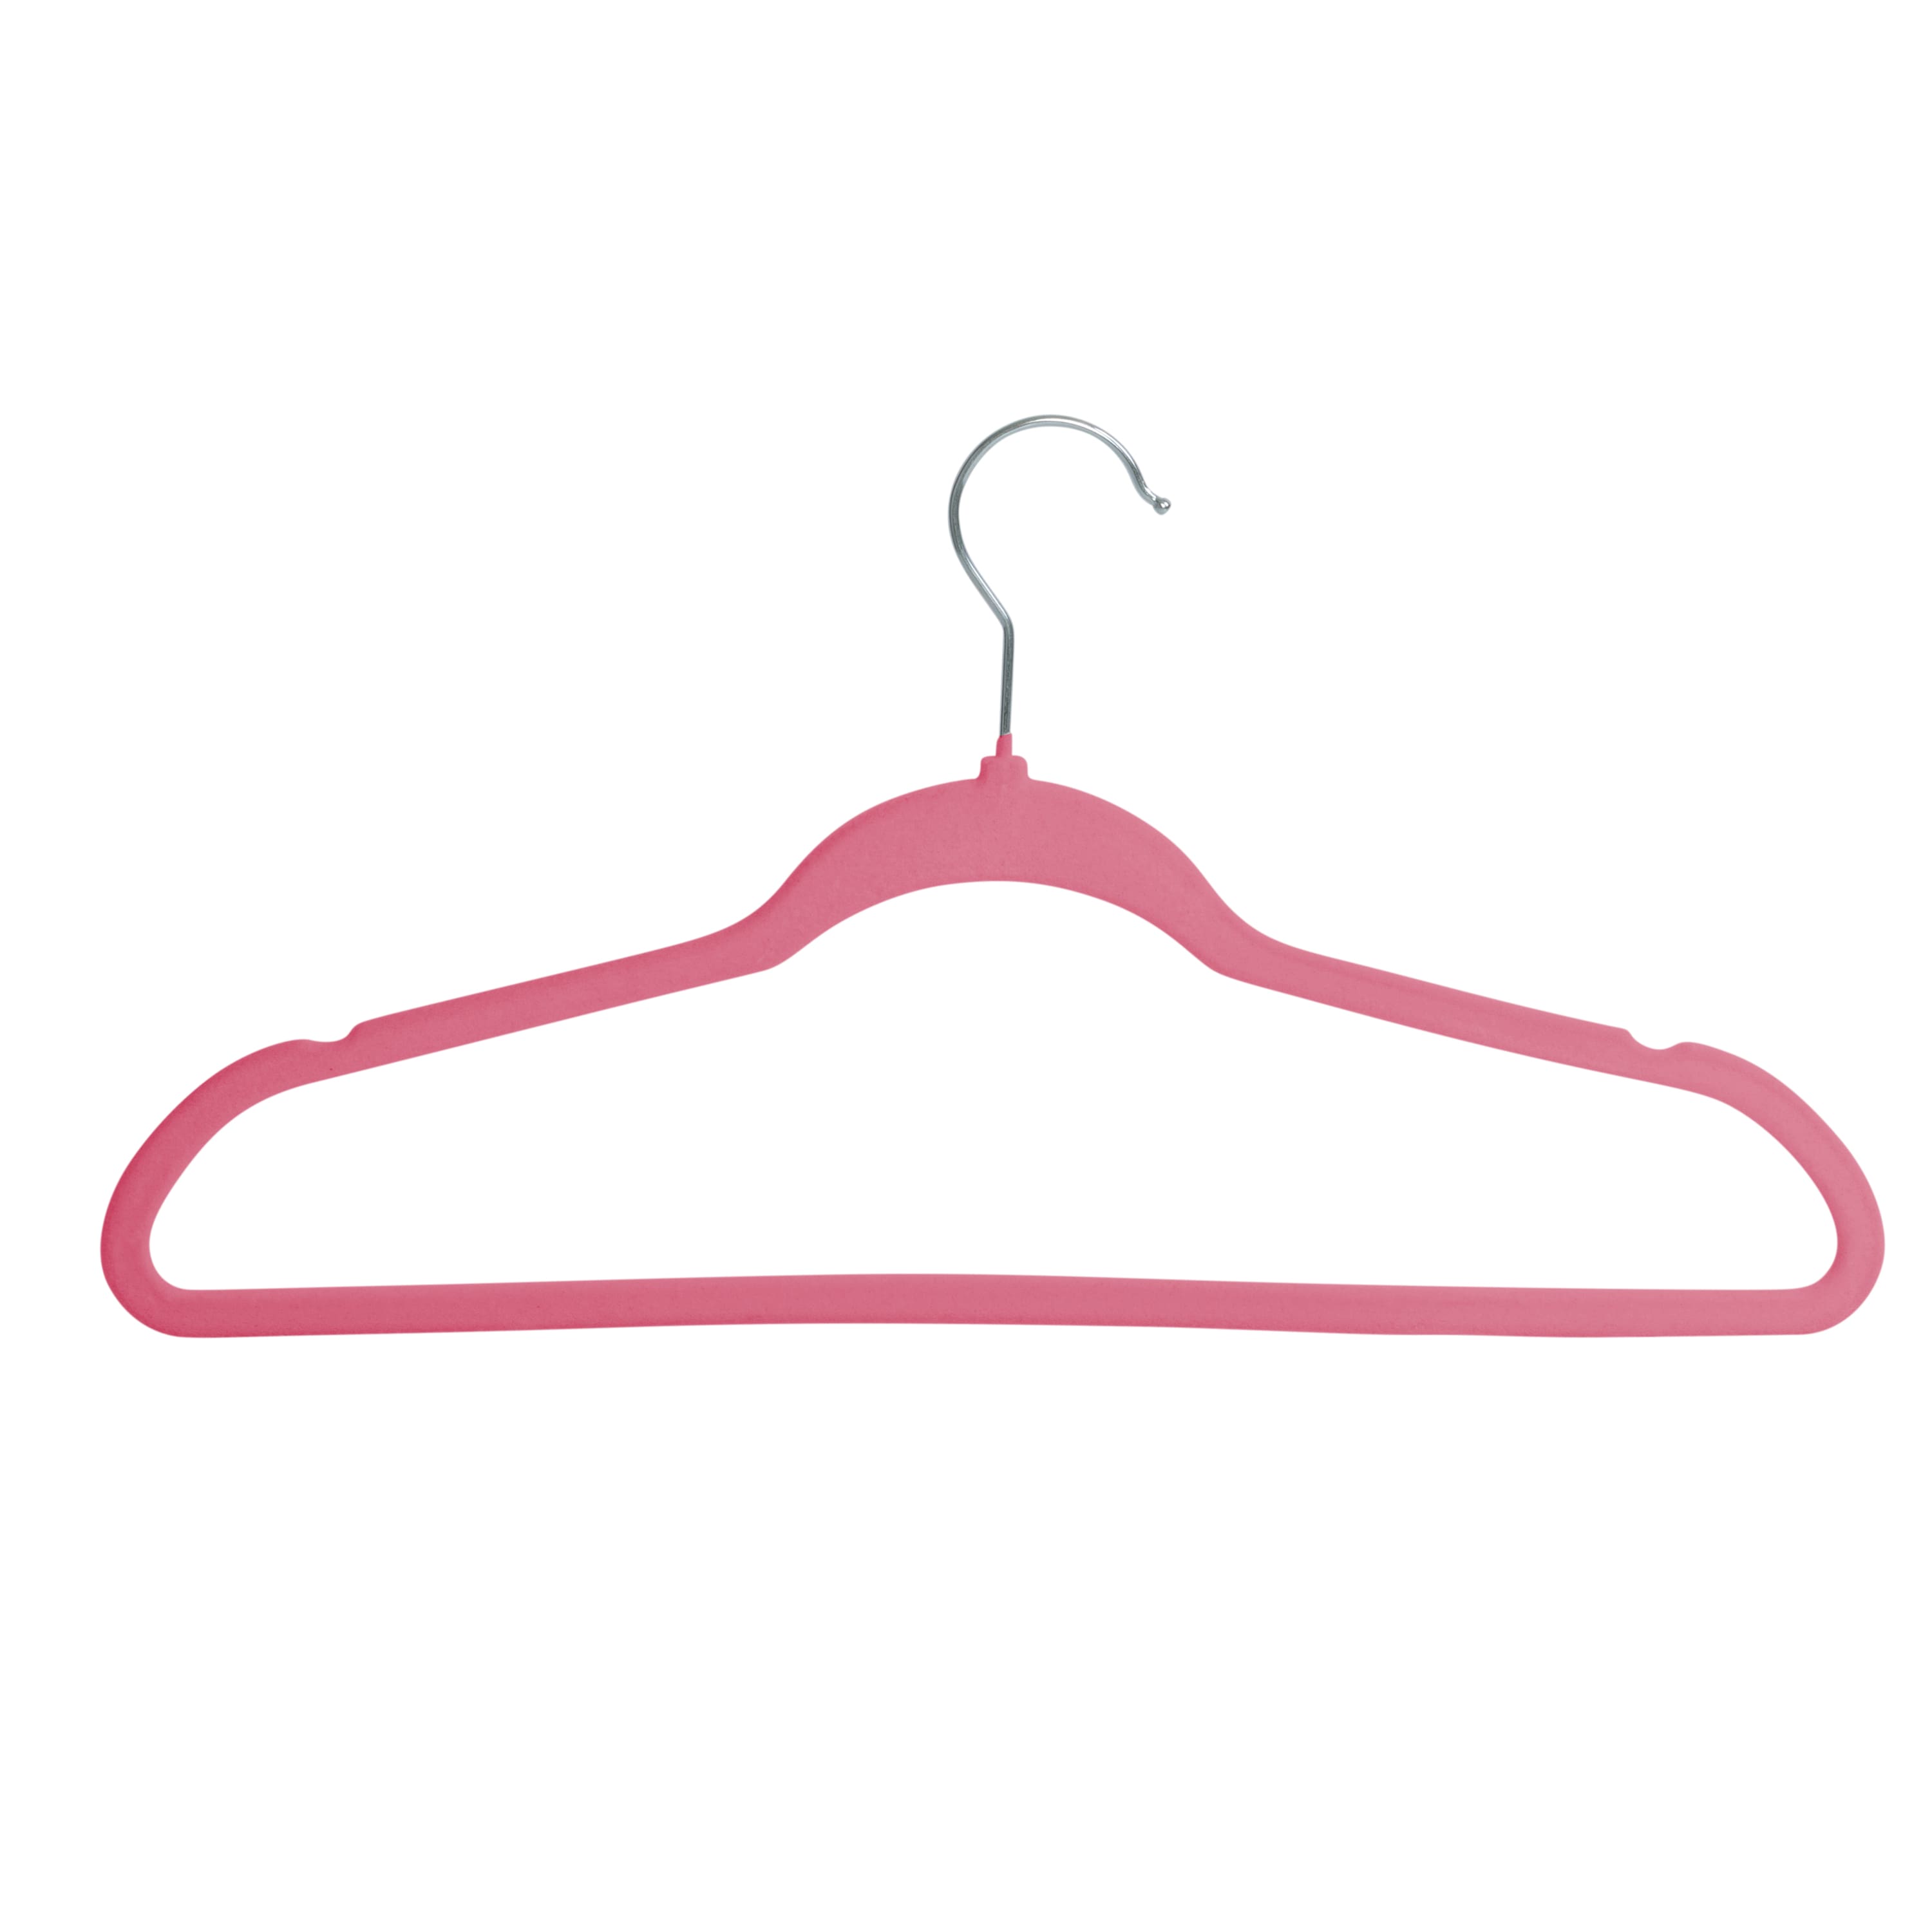 White Slim-Profile Non-Slip Velvet Hangers